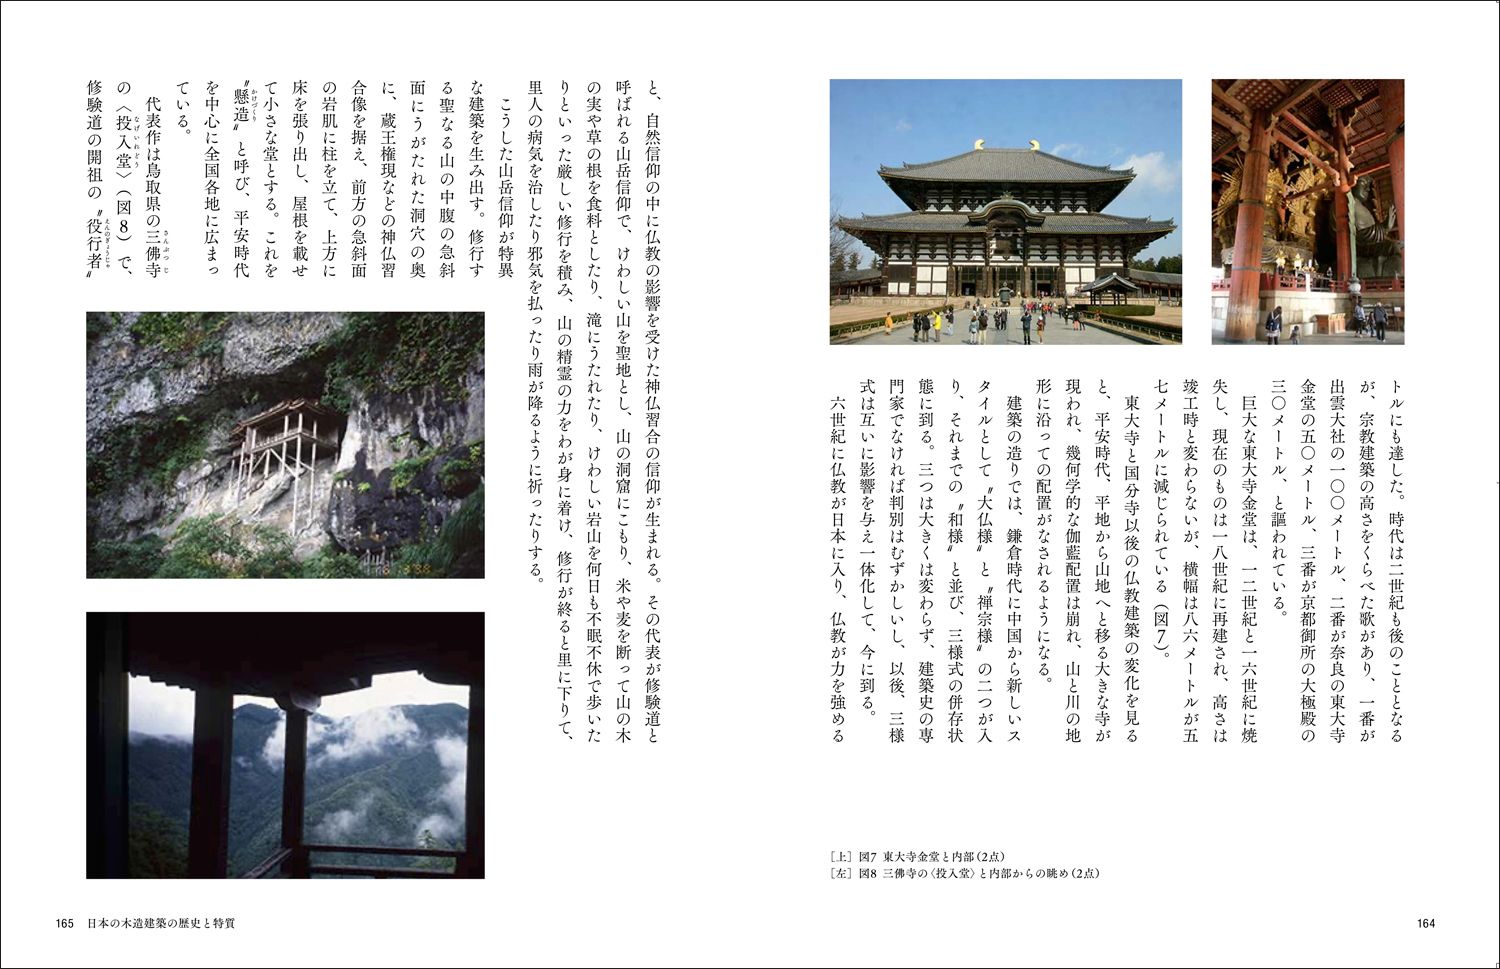 エルメス財団の新刊本で日本人の身近な素材「木」について知る